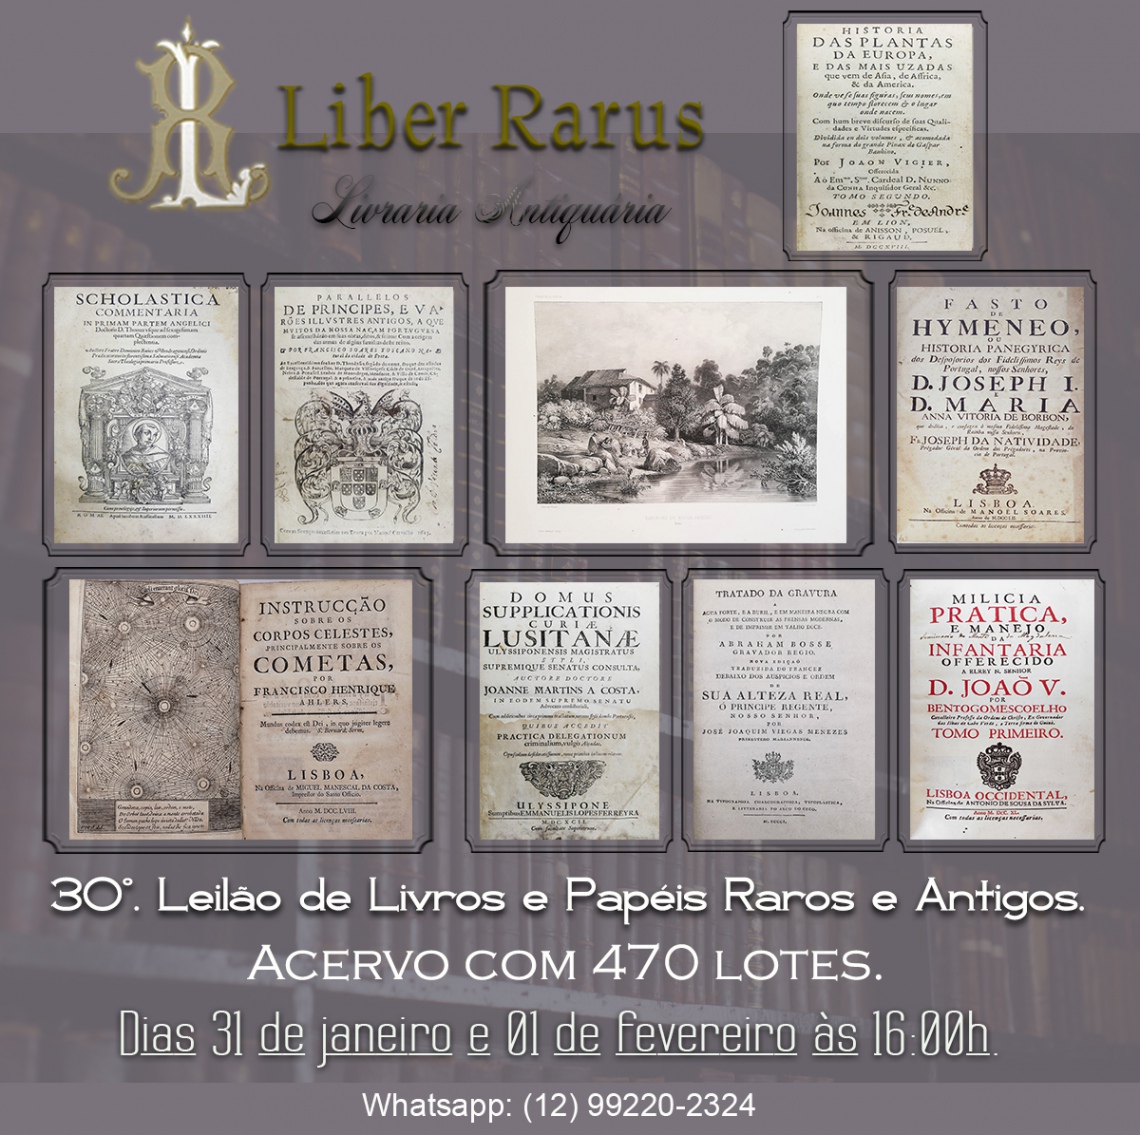 30º Leilão de Livros e Papéis Raros e Antigos - Liber Rarus - 31/01 e 01/02/2022 - 16h00